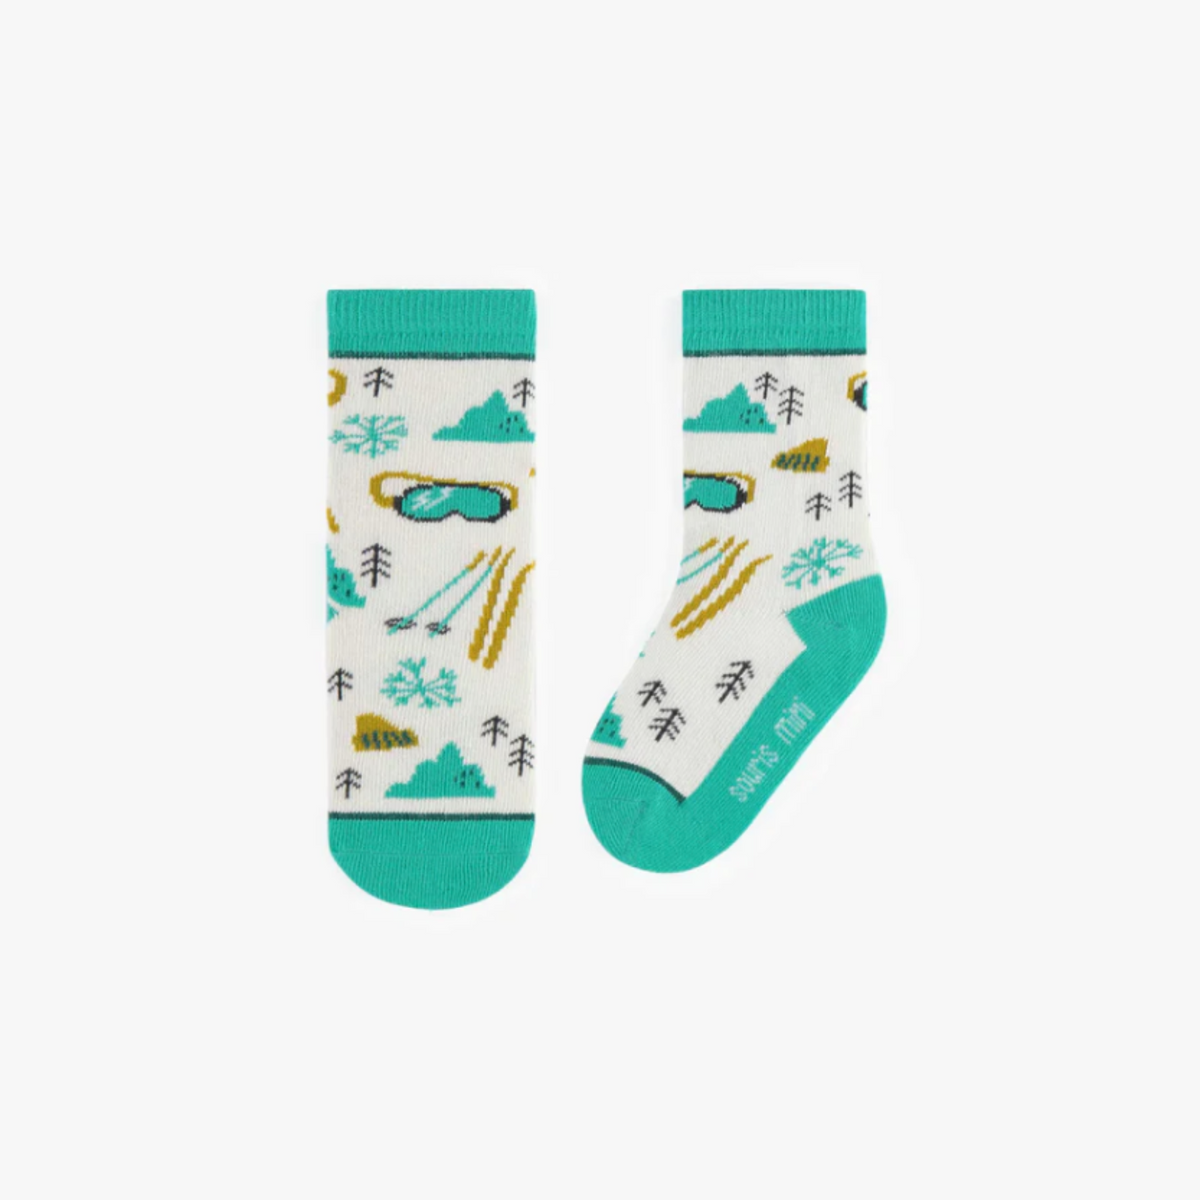 Turquoise Ski Pattern Socks, Baby